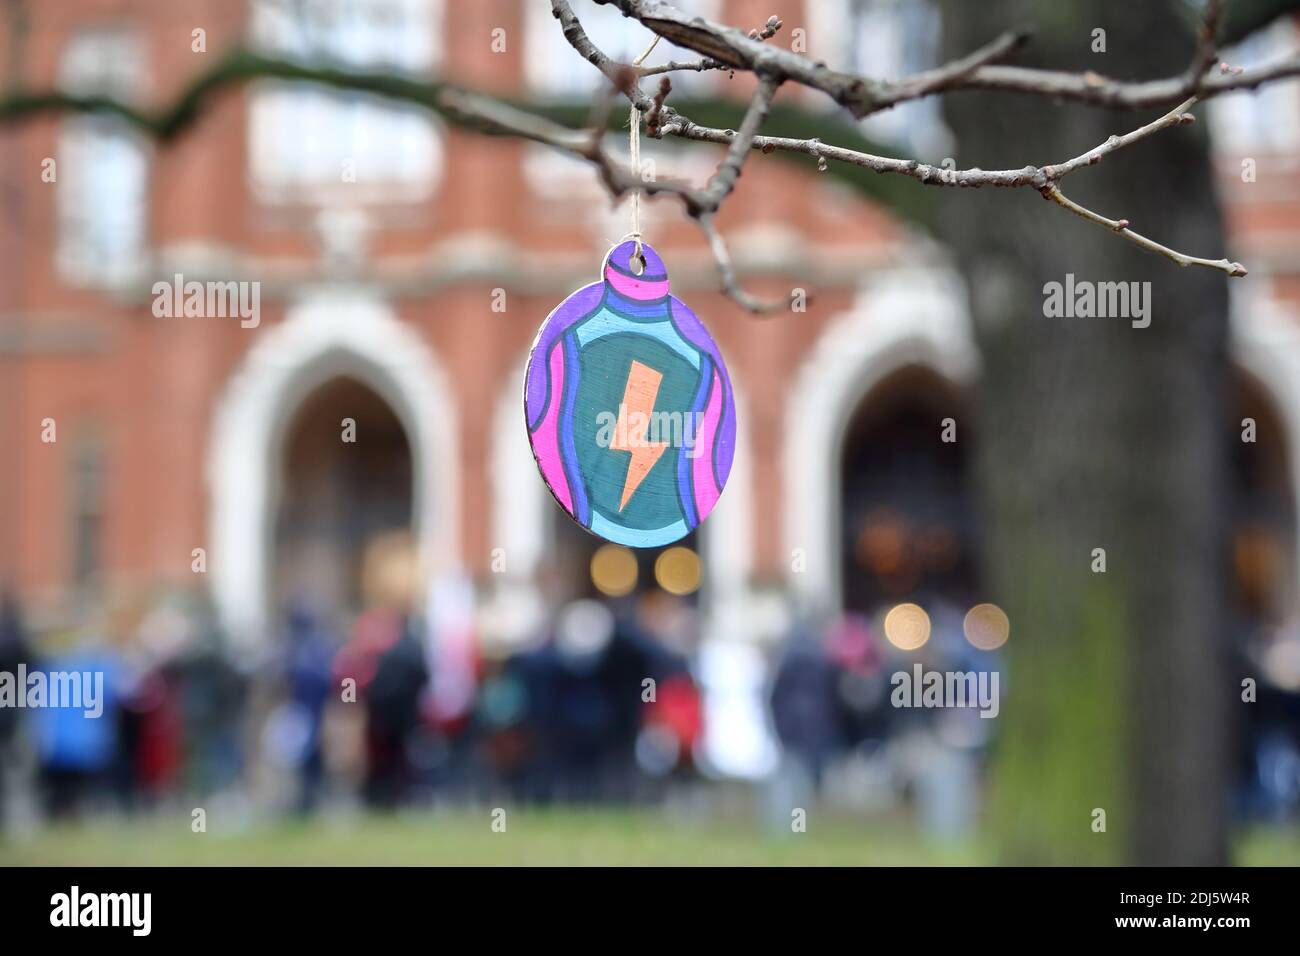 Boule de Noël ornée de la foudre - le symbole de la grève des femmes est suspendu sur l'arbre devant le bâtiment de l'université pendant la démonstration 13.12.2020 Banque D'Images